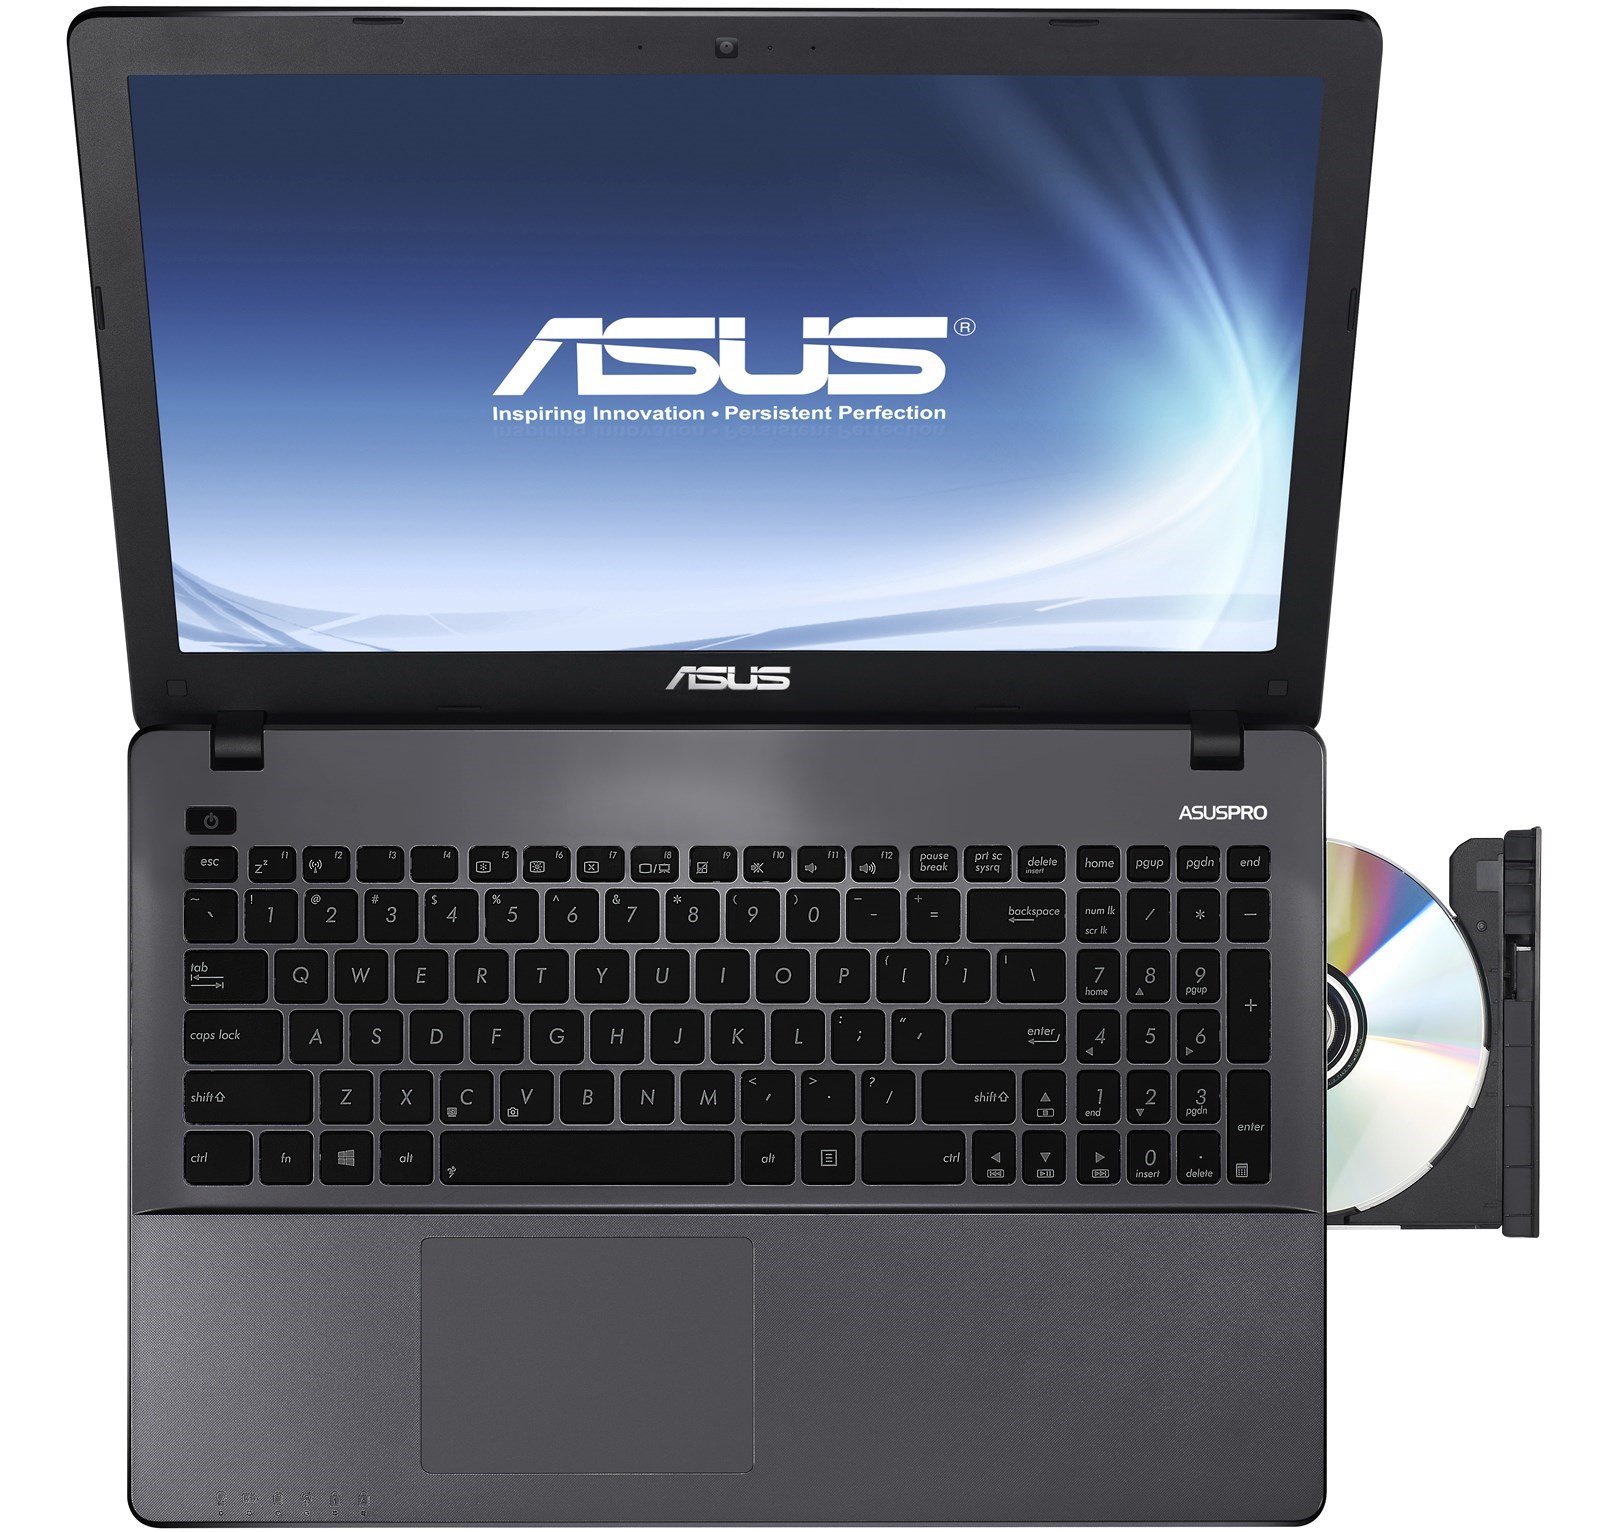 Laptop Asus, nhiều cấu hình cao thấp, giá lẻ bằng giá sỉ, tháng ban hàng ko lời!